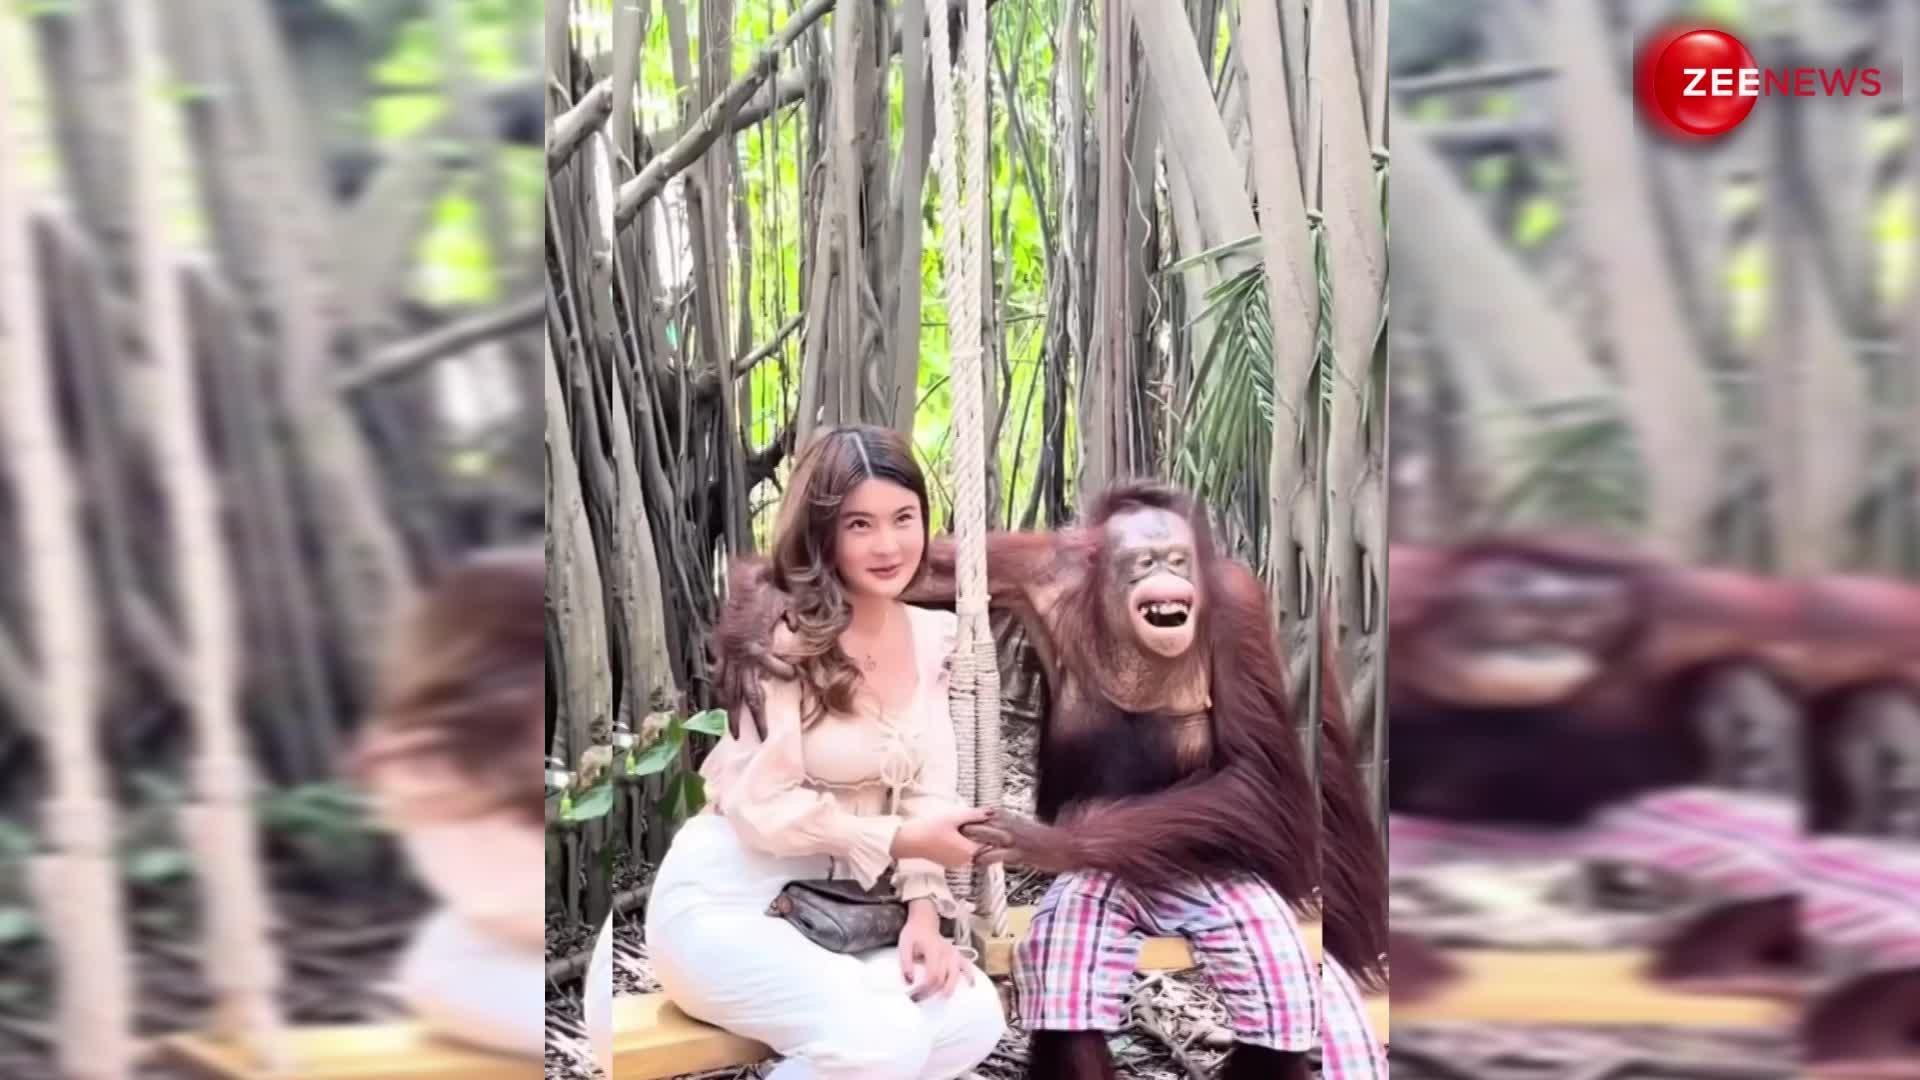 Naughty Gorilla video: जू में पहुंची लड़की को गोरिला ने किस कर किया प्रोपोज़, आगे हुआ कुछ ऐसा; देख लड़की हो गई बेहोश